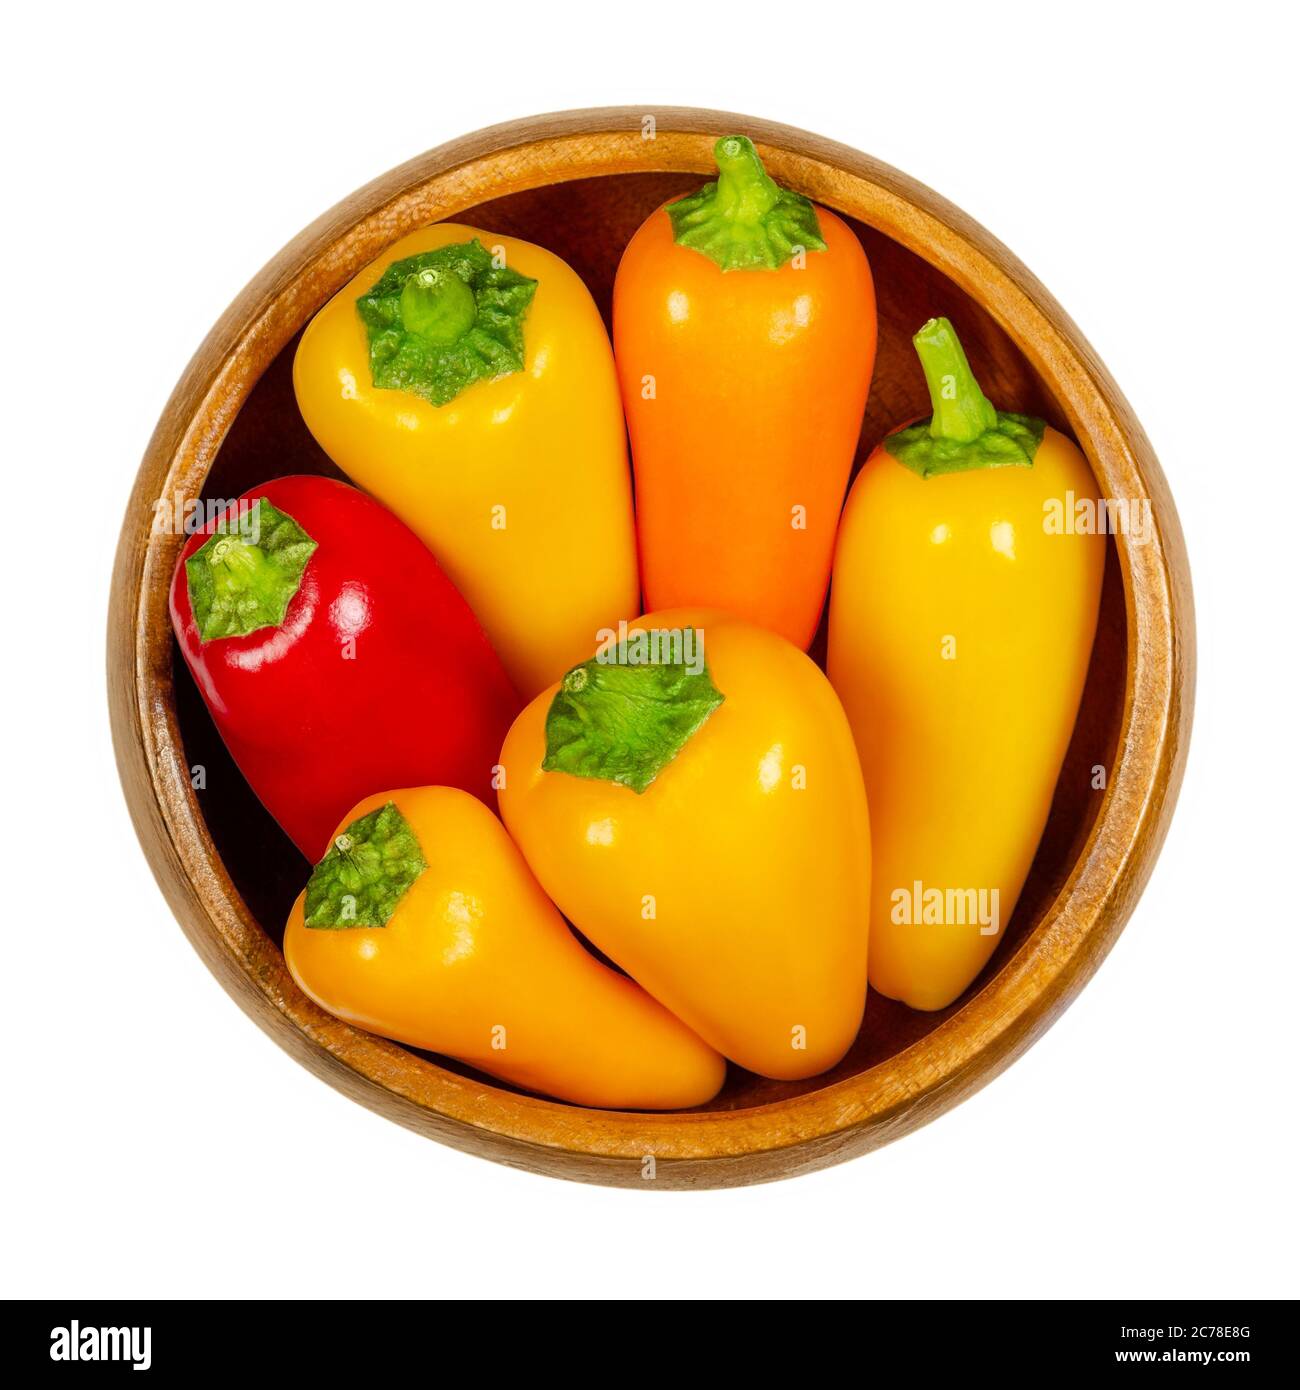 Bunte Paprika in Holzschüssel. Auch Paprika oder Paprika. Frische gelbe, orange und rote Früchte von Capsicum annuum. Stockfoto